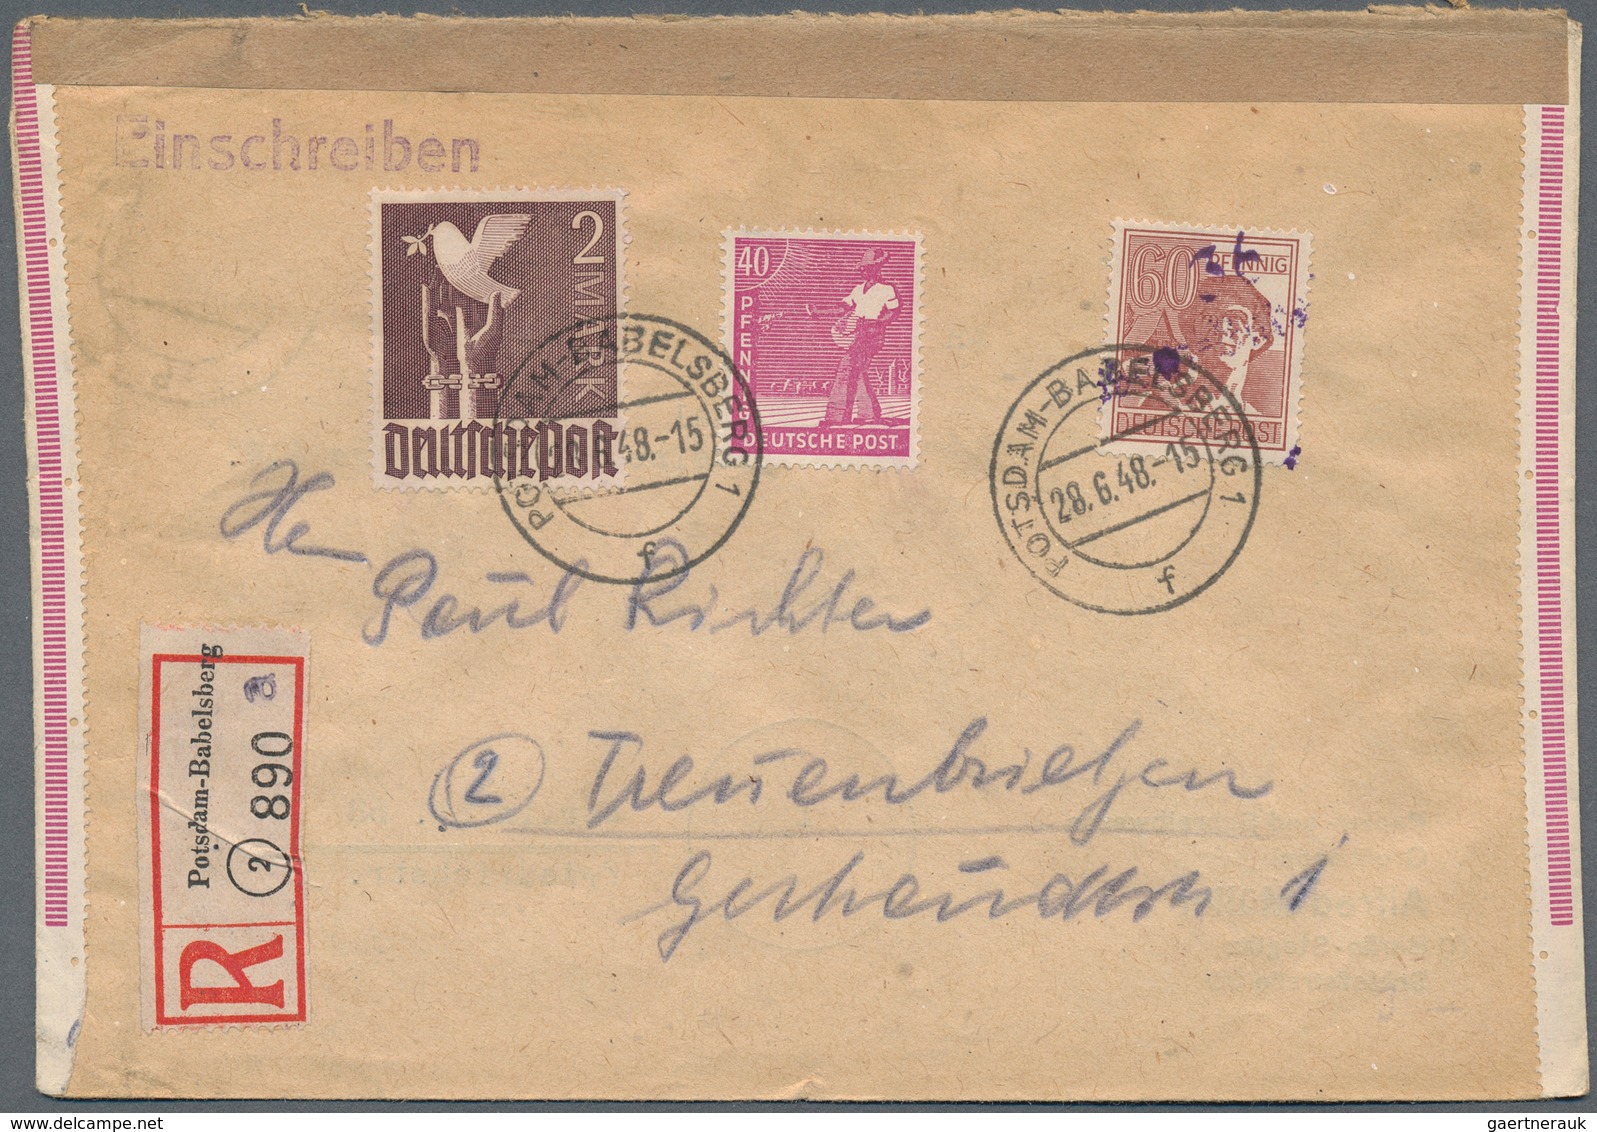 32119 Deutschland nach 1945: 1945/1956, vielseitiger Bestand von ca. 135 Briefen/Karten/wenige Vorderseite